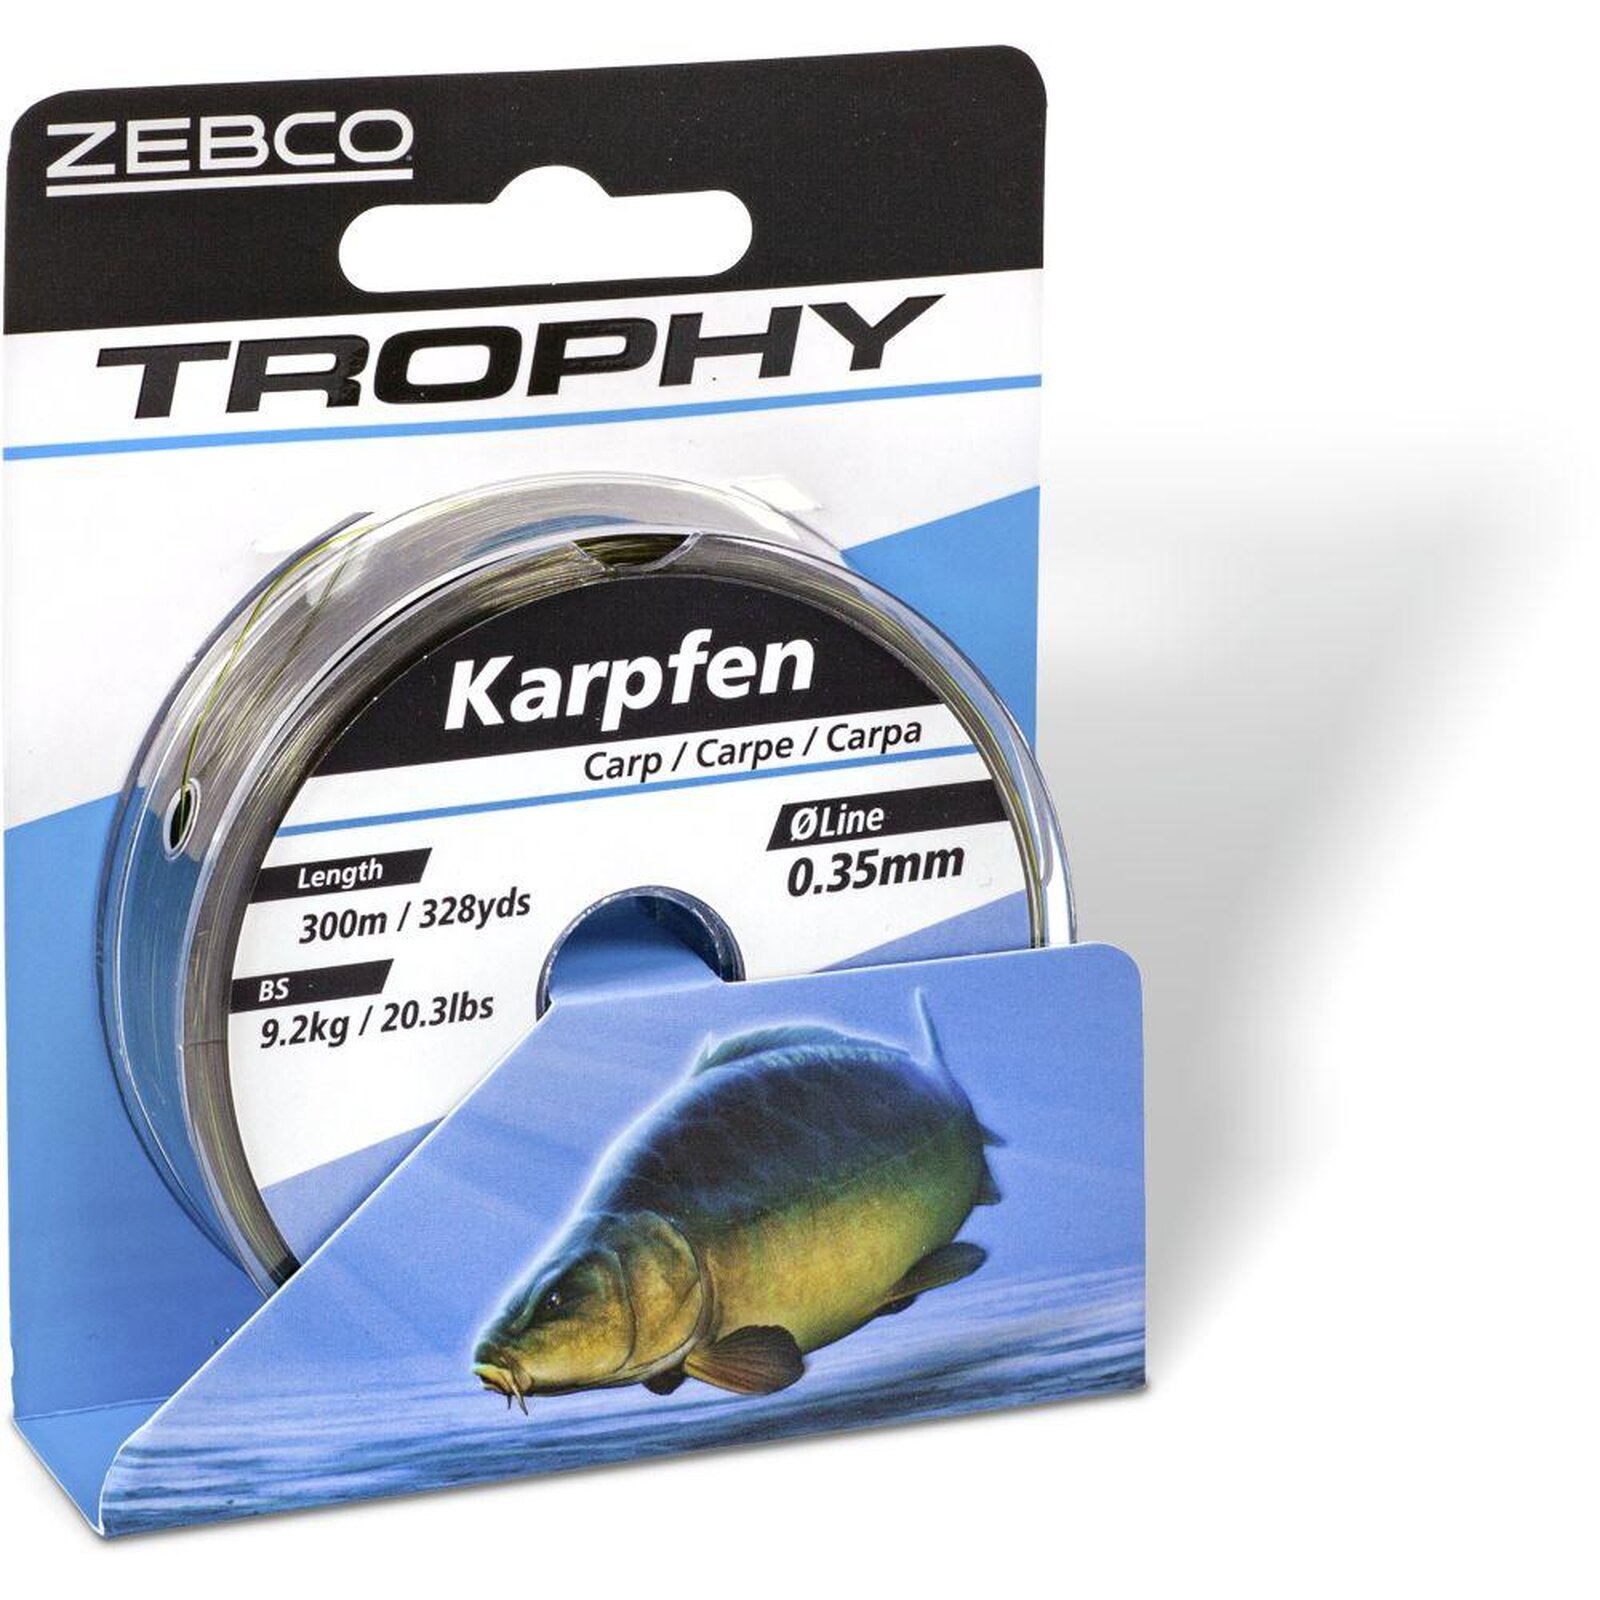 Zebco Trophy Karpfen 300m camou-dunkel